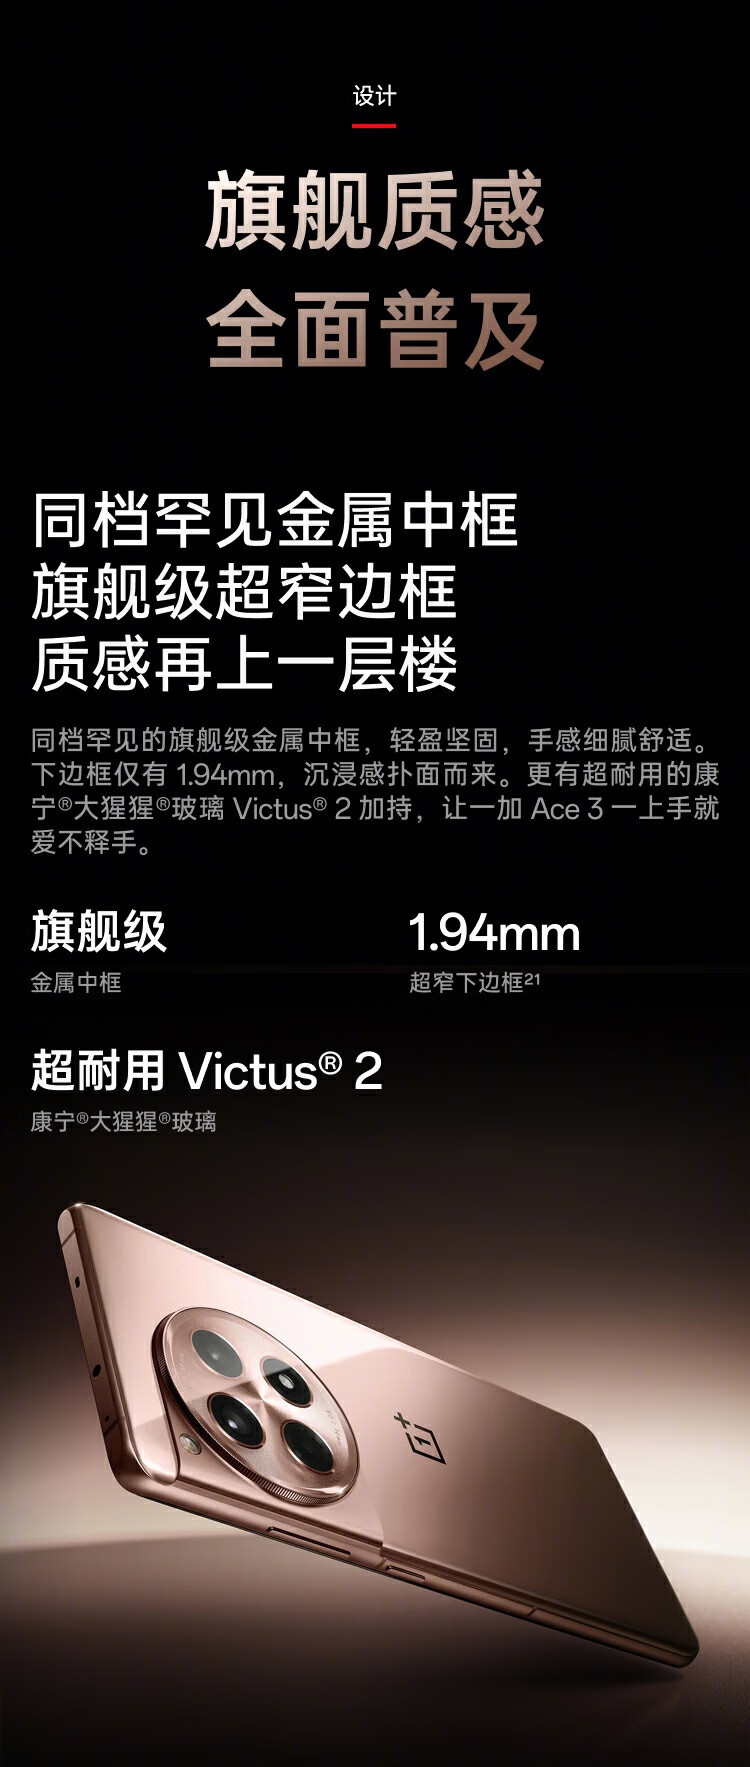 一加 Ace 3 第二代骁龙8旗舰芯片1.5K 东方屏 5G手机